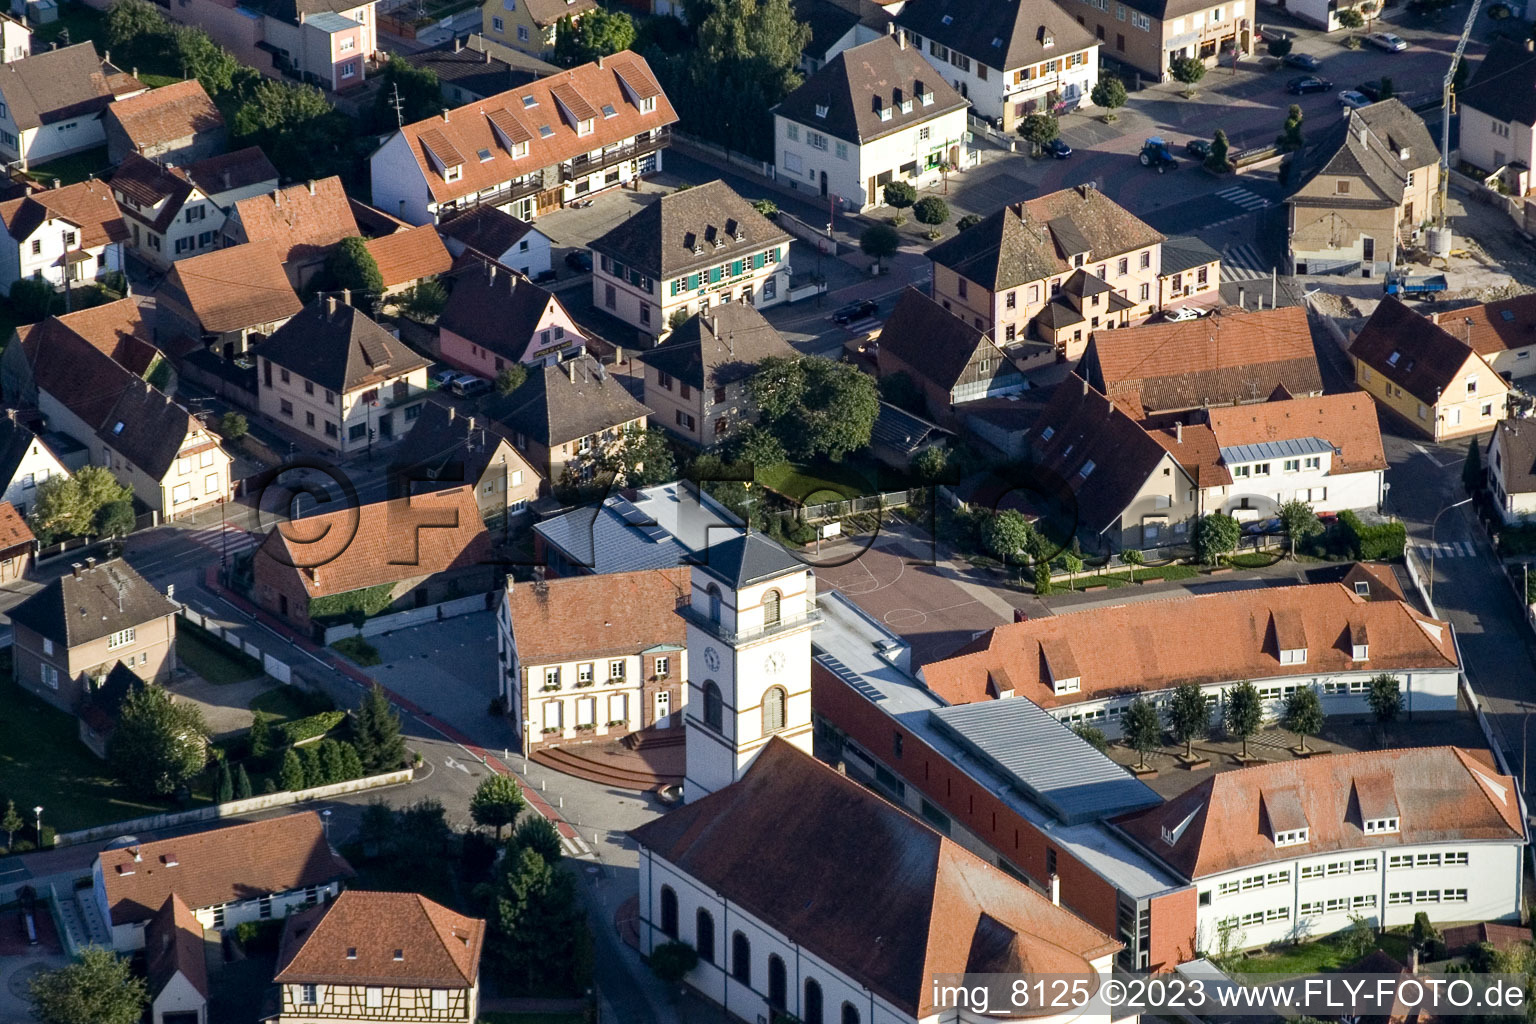 Drusenheim dans le département Bas Rhin, France vue d'en haut